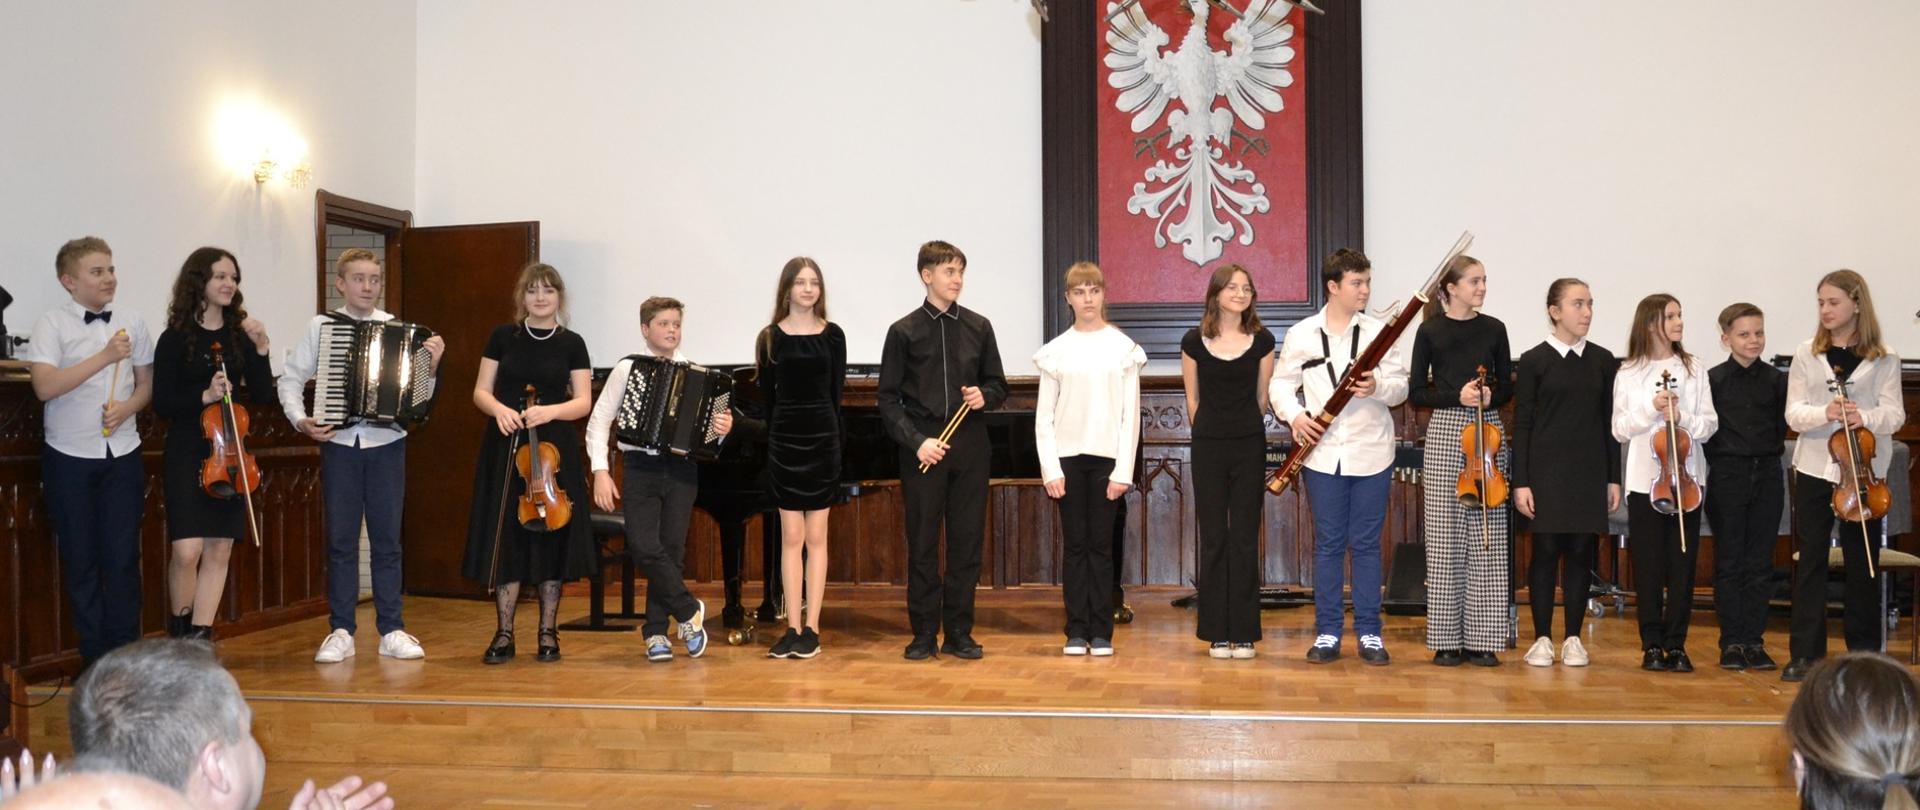 uczniowie klasy piątej cyklu sześcioletniego PSM I stopnia podczas swojego koncertu klasowego na scenie w Sali Królewskiej PSM Mielec